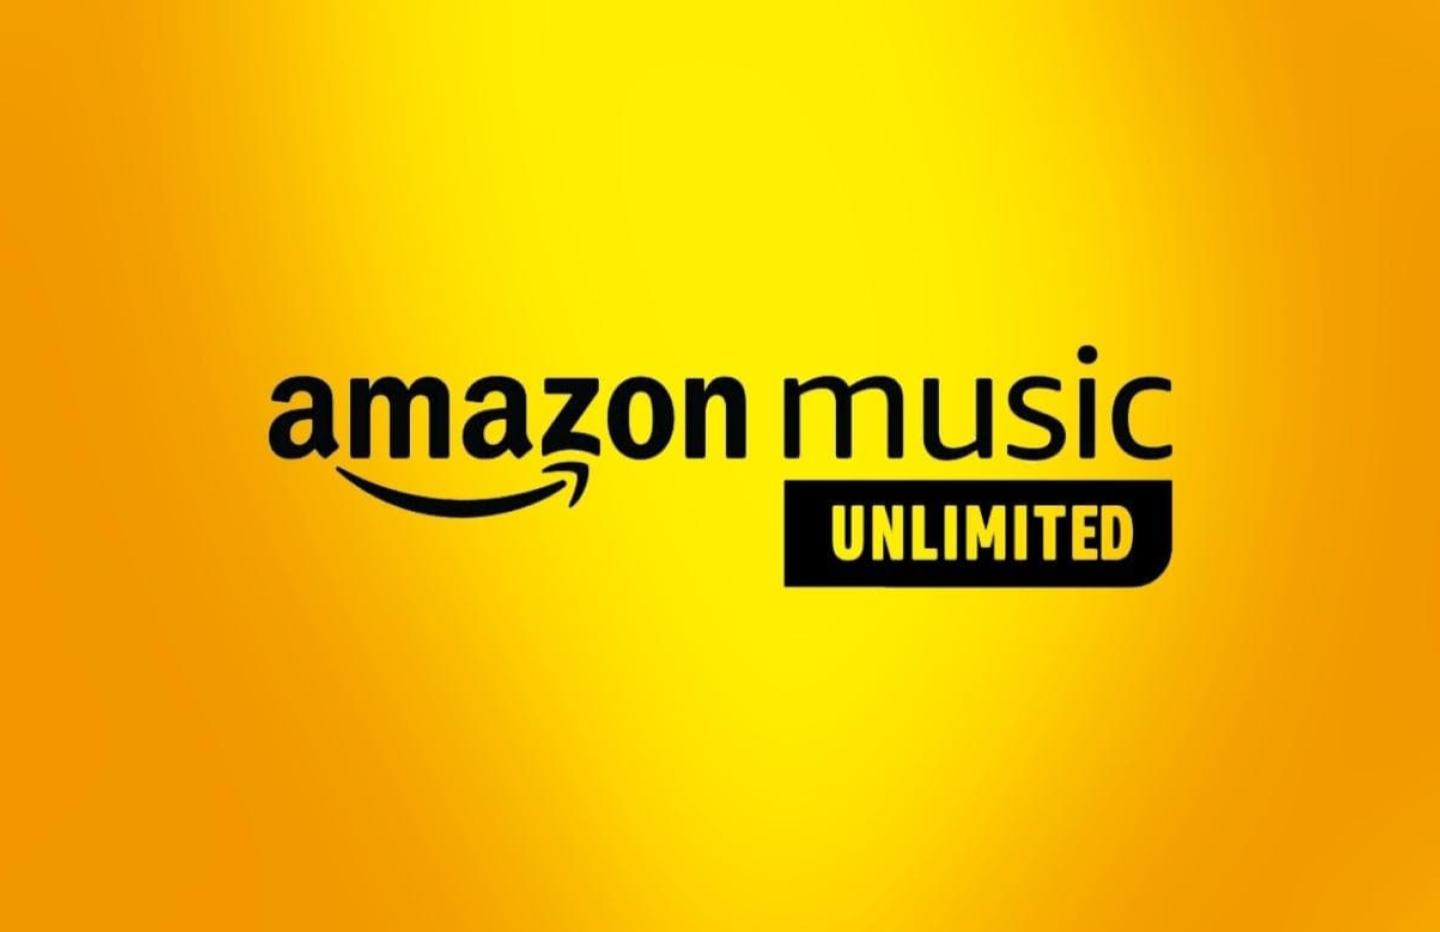 Profitez d’une offre spéciale sur Amazon Music Unlimited avec 3 mois gratuits